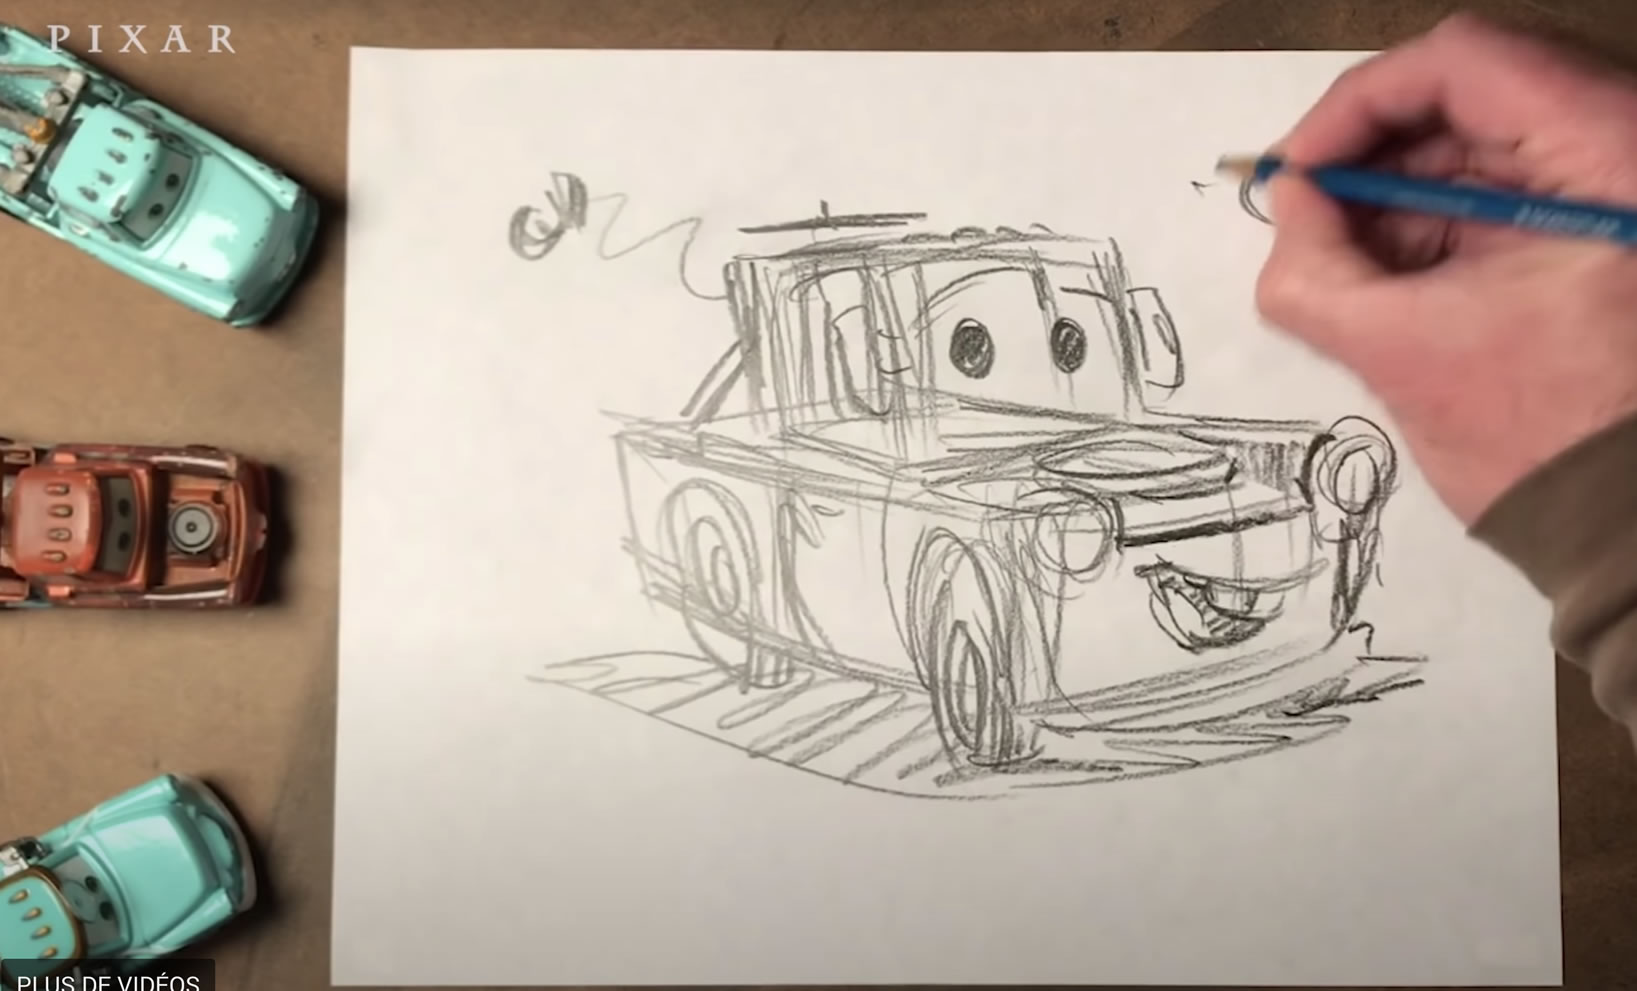 Comment dessiner simplement les personnages Pixar ?